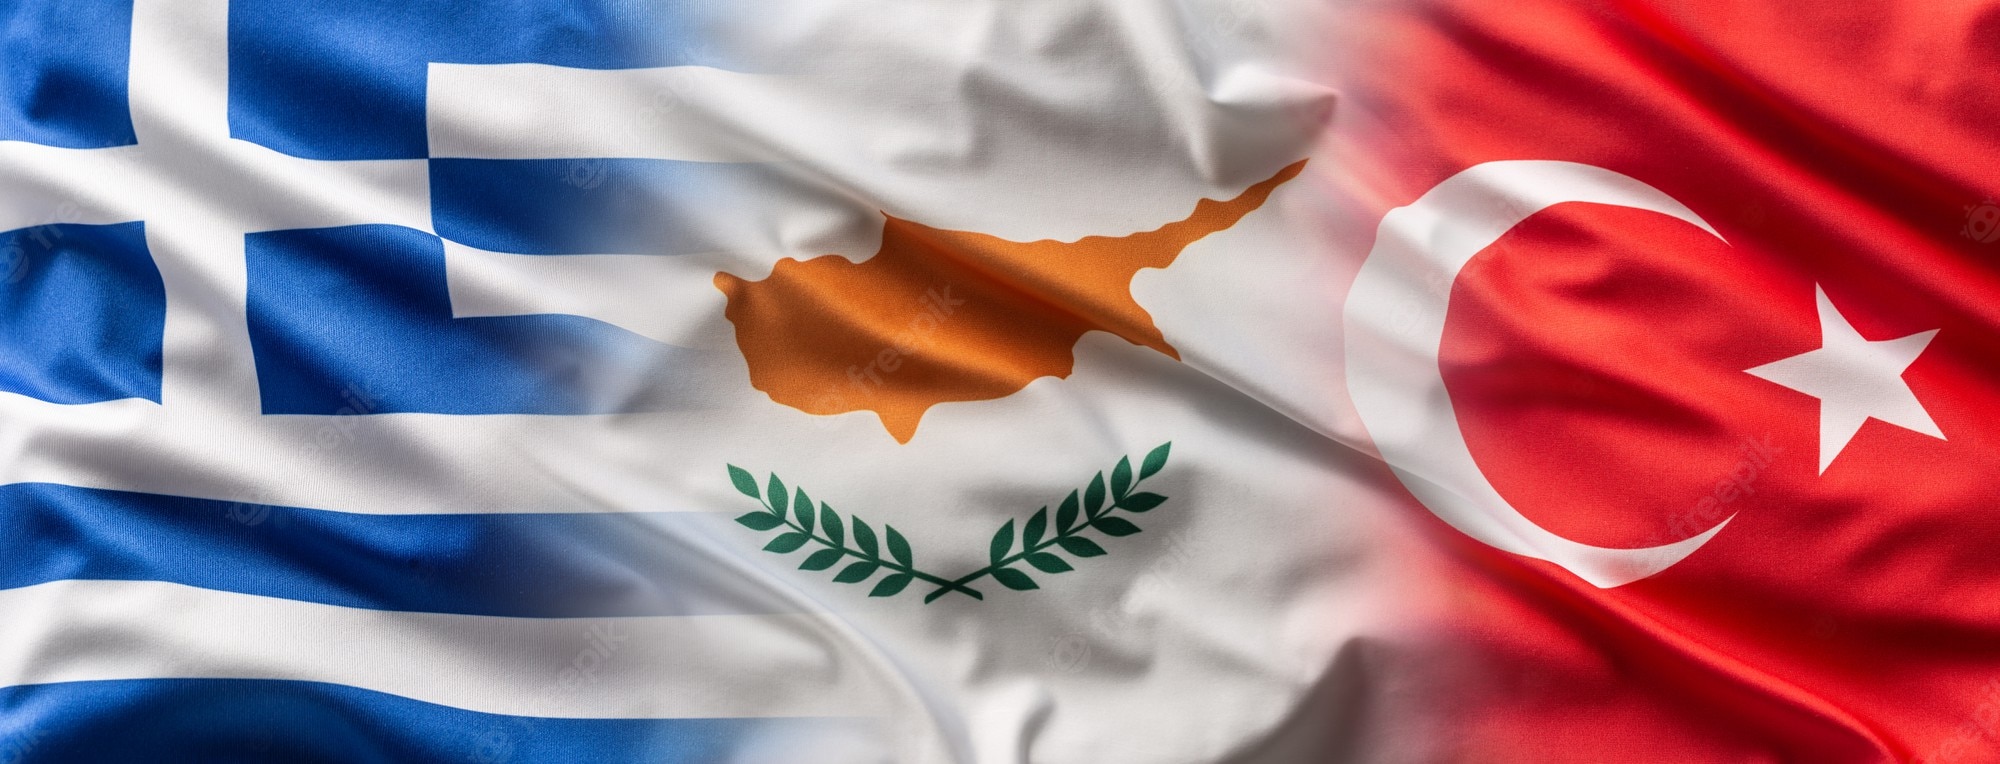 greece cyprus turkey flags blowing wind 341862 748